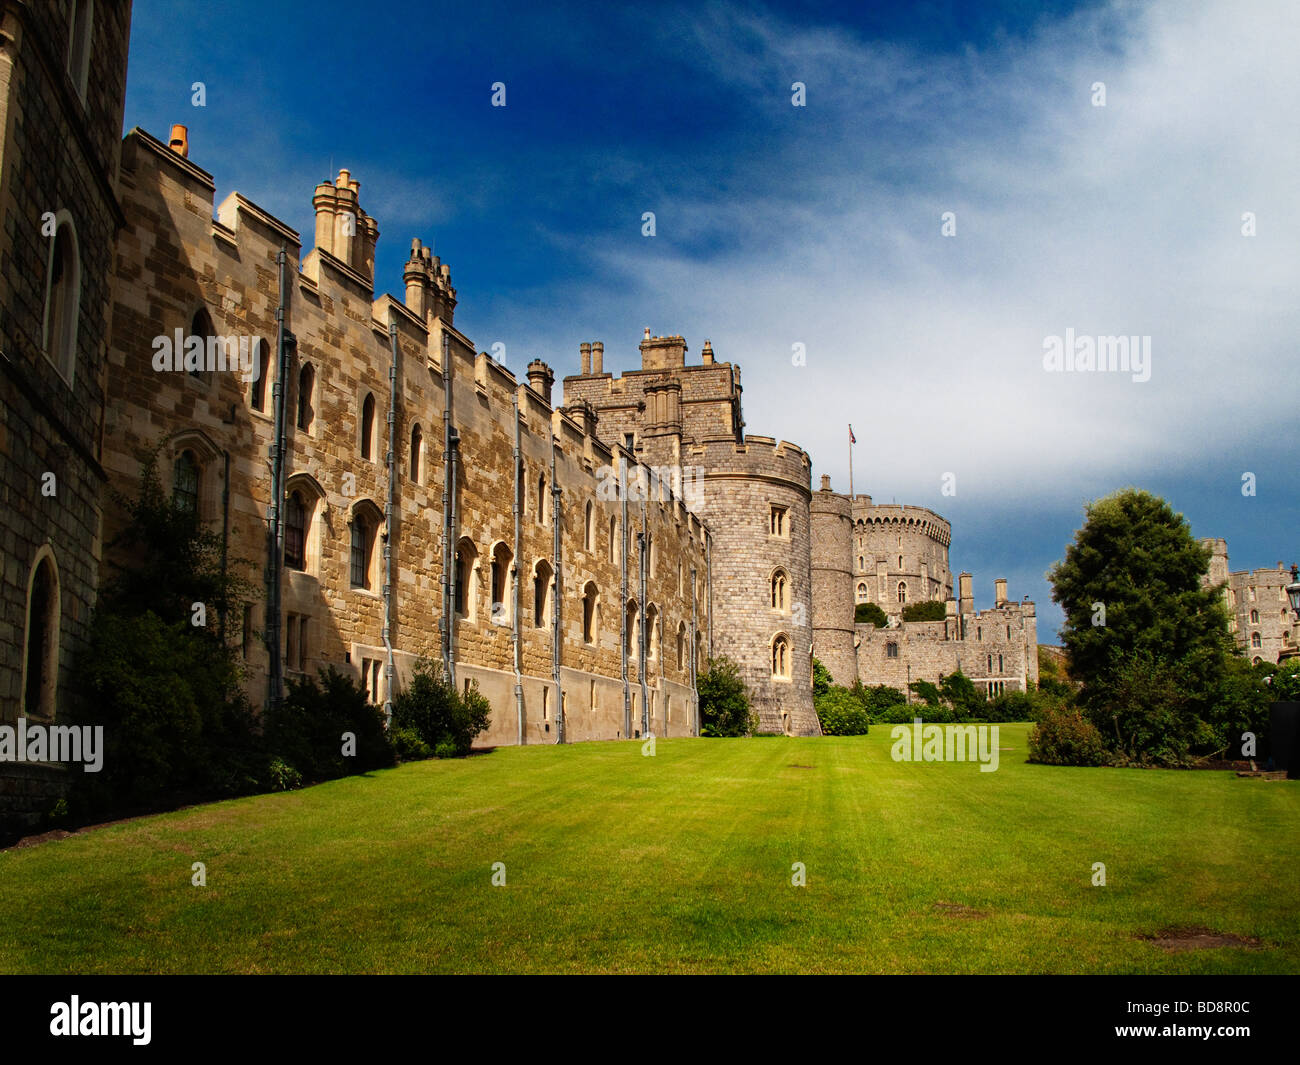 Le château de Windsor, Angleterre Banque D'Images